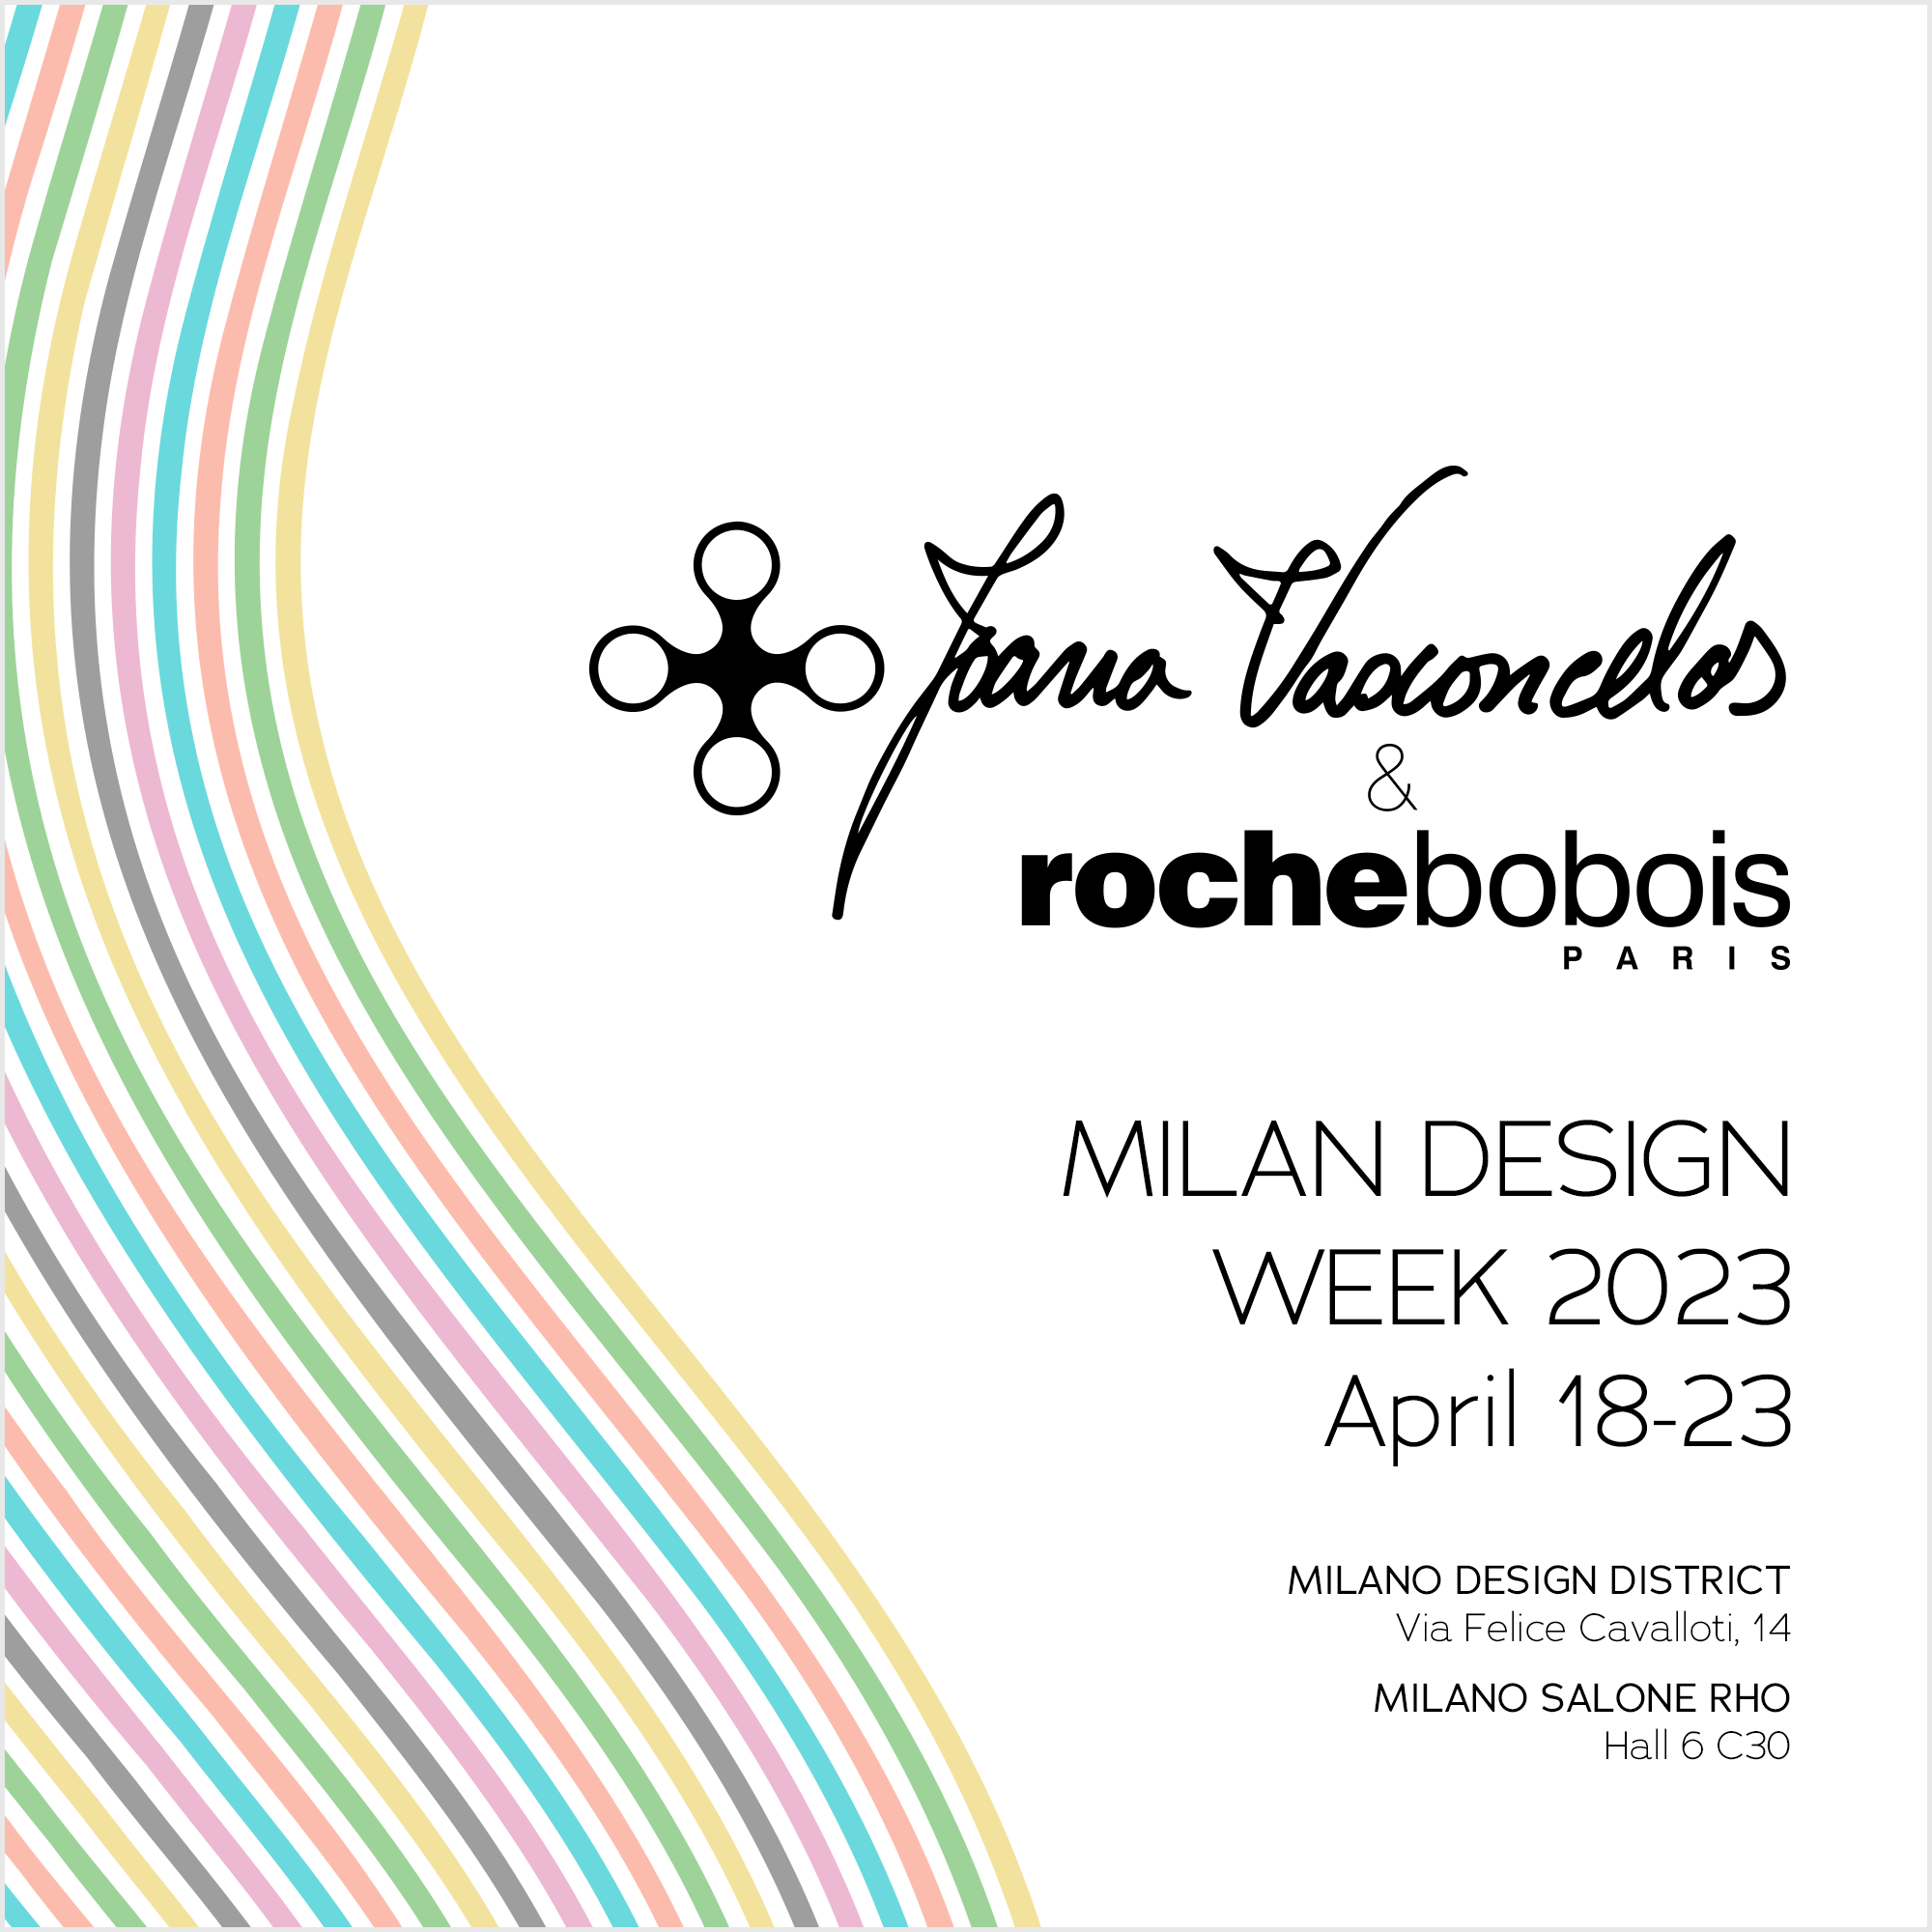 Milan Design Week 2023, April 18-23